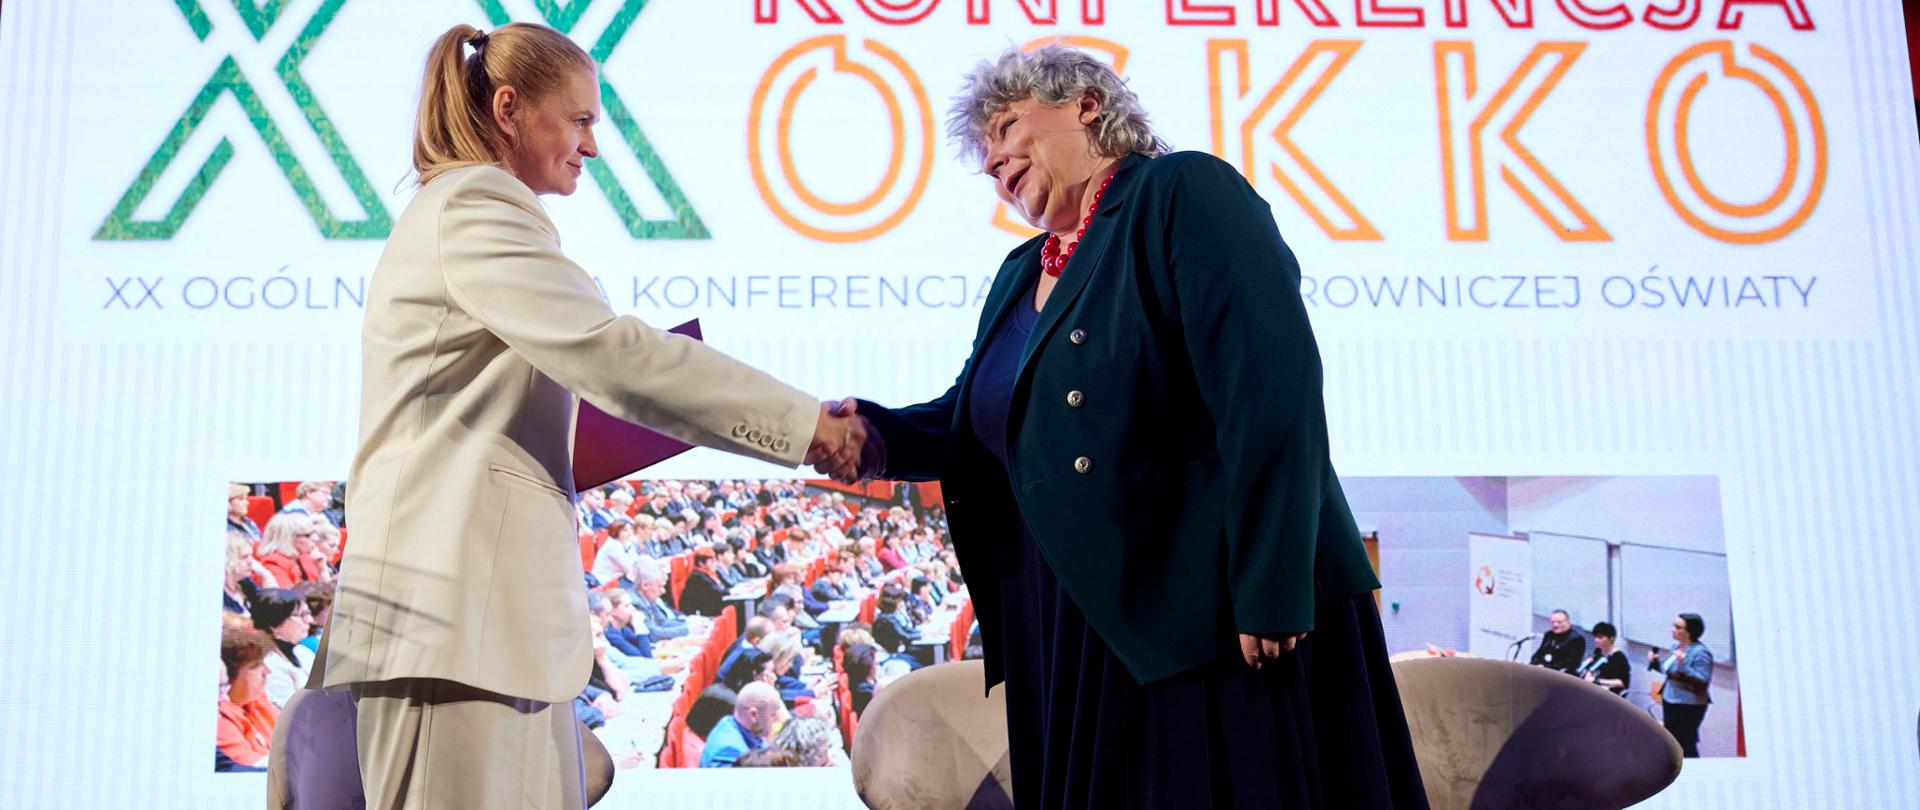 Minister Barbara Nowacka stoi na scenie, podaje rękę nowej małopolskiej kurator oświaty. W tle telebim z napisem XX Ogólnopolska Konferencja Kadry Kierowniczej Oświaty 